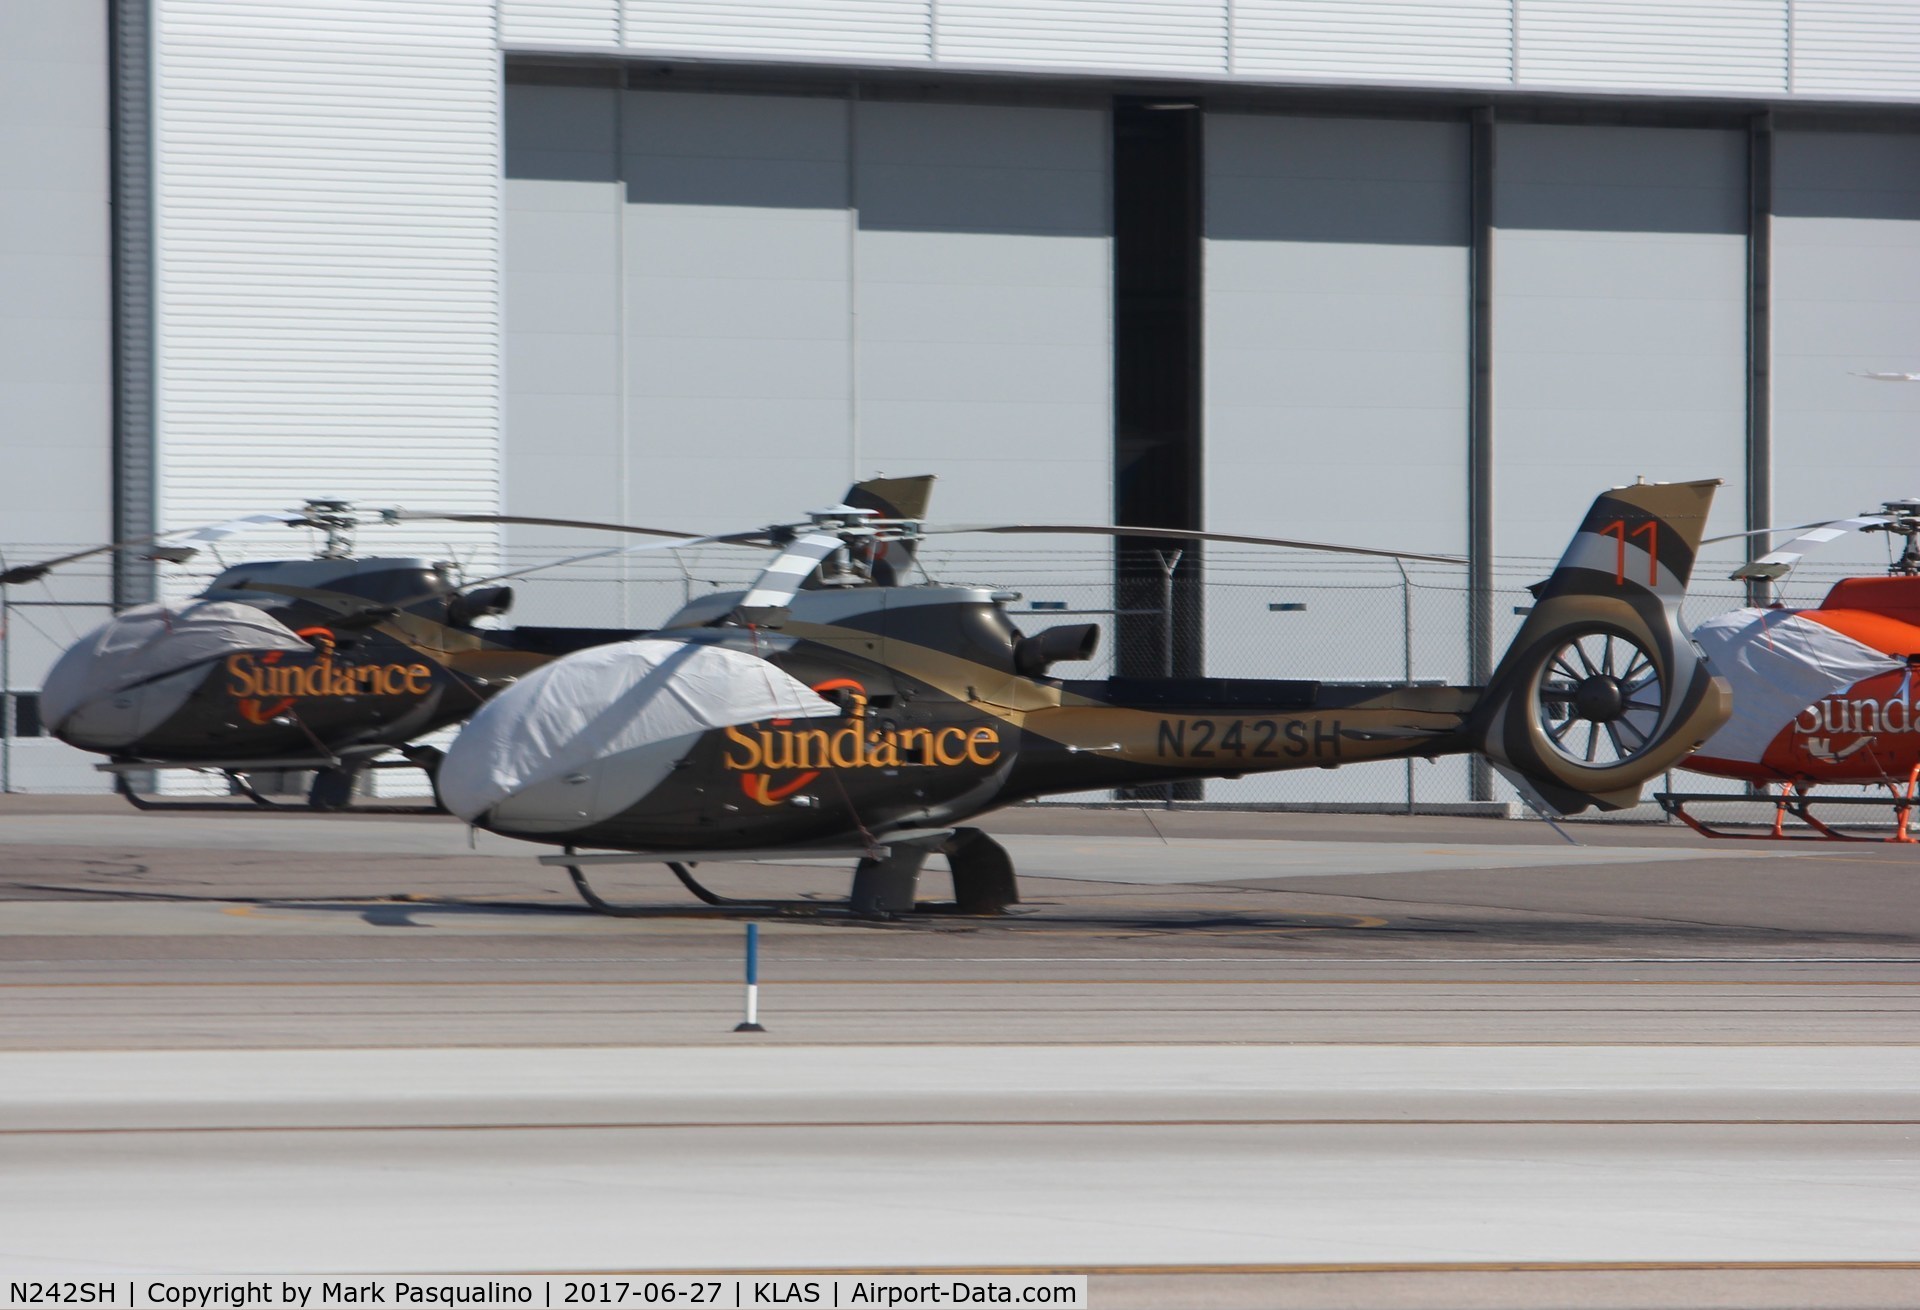 N242SH, 2015 Airbus Helicopters EC-130T-2 C/N 8120, EC 130 T2